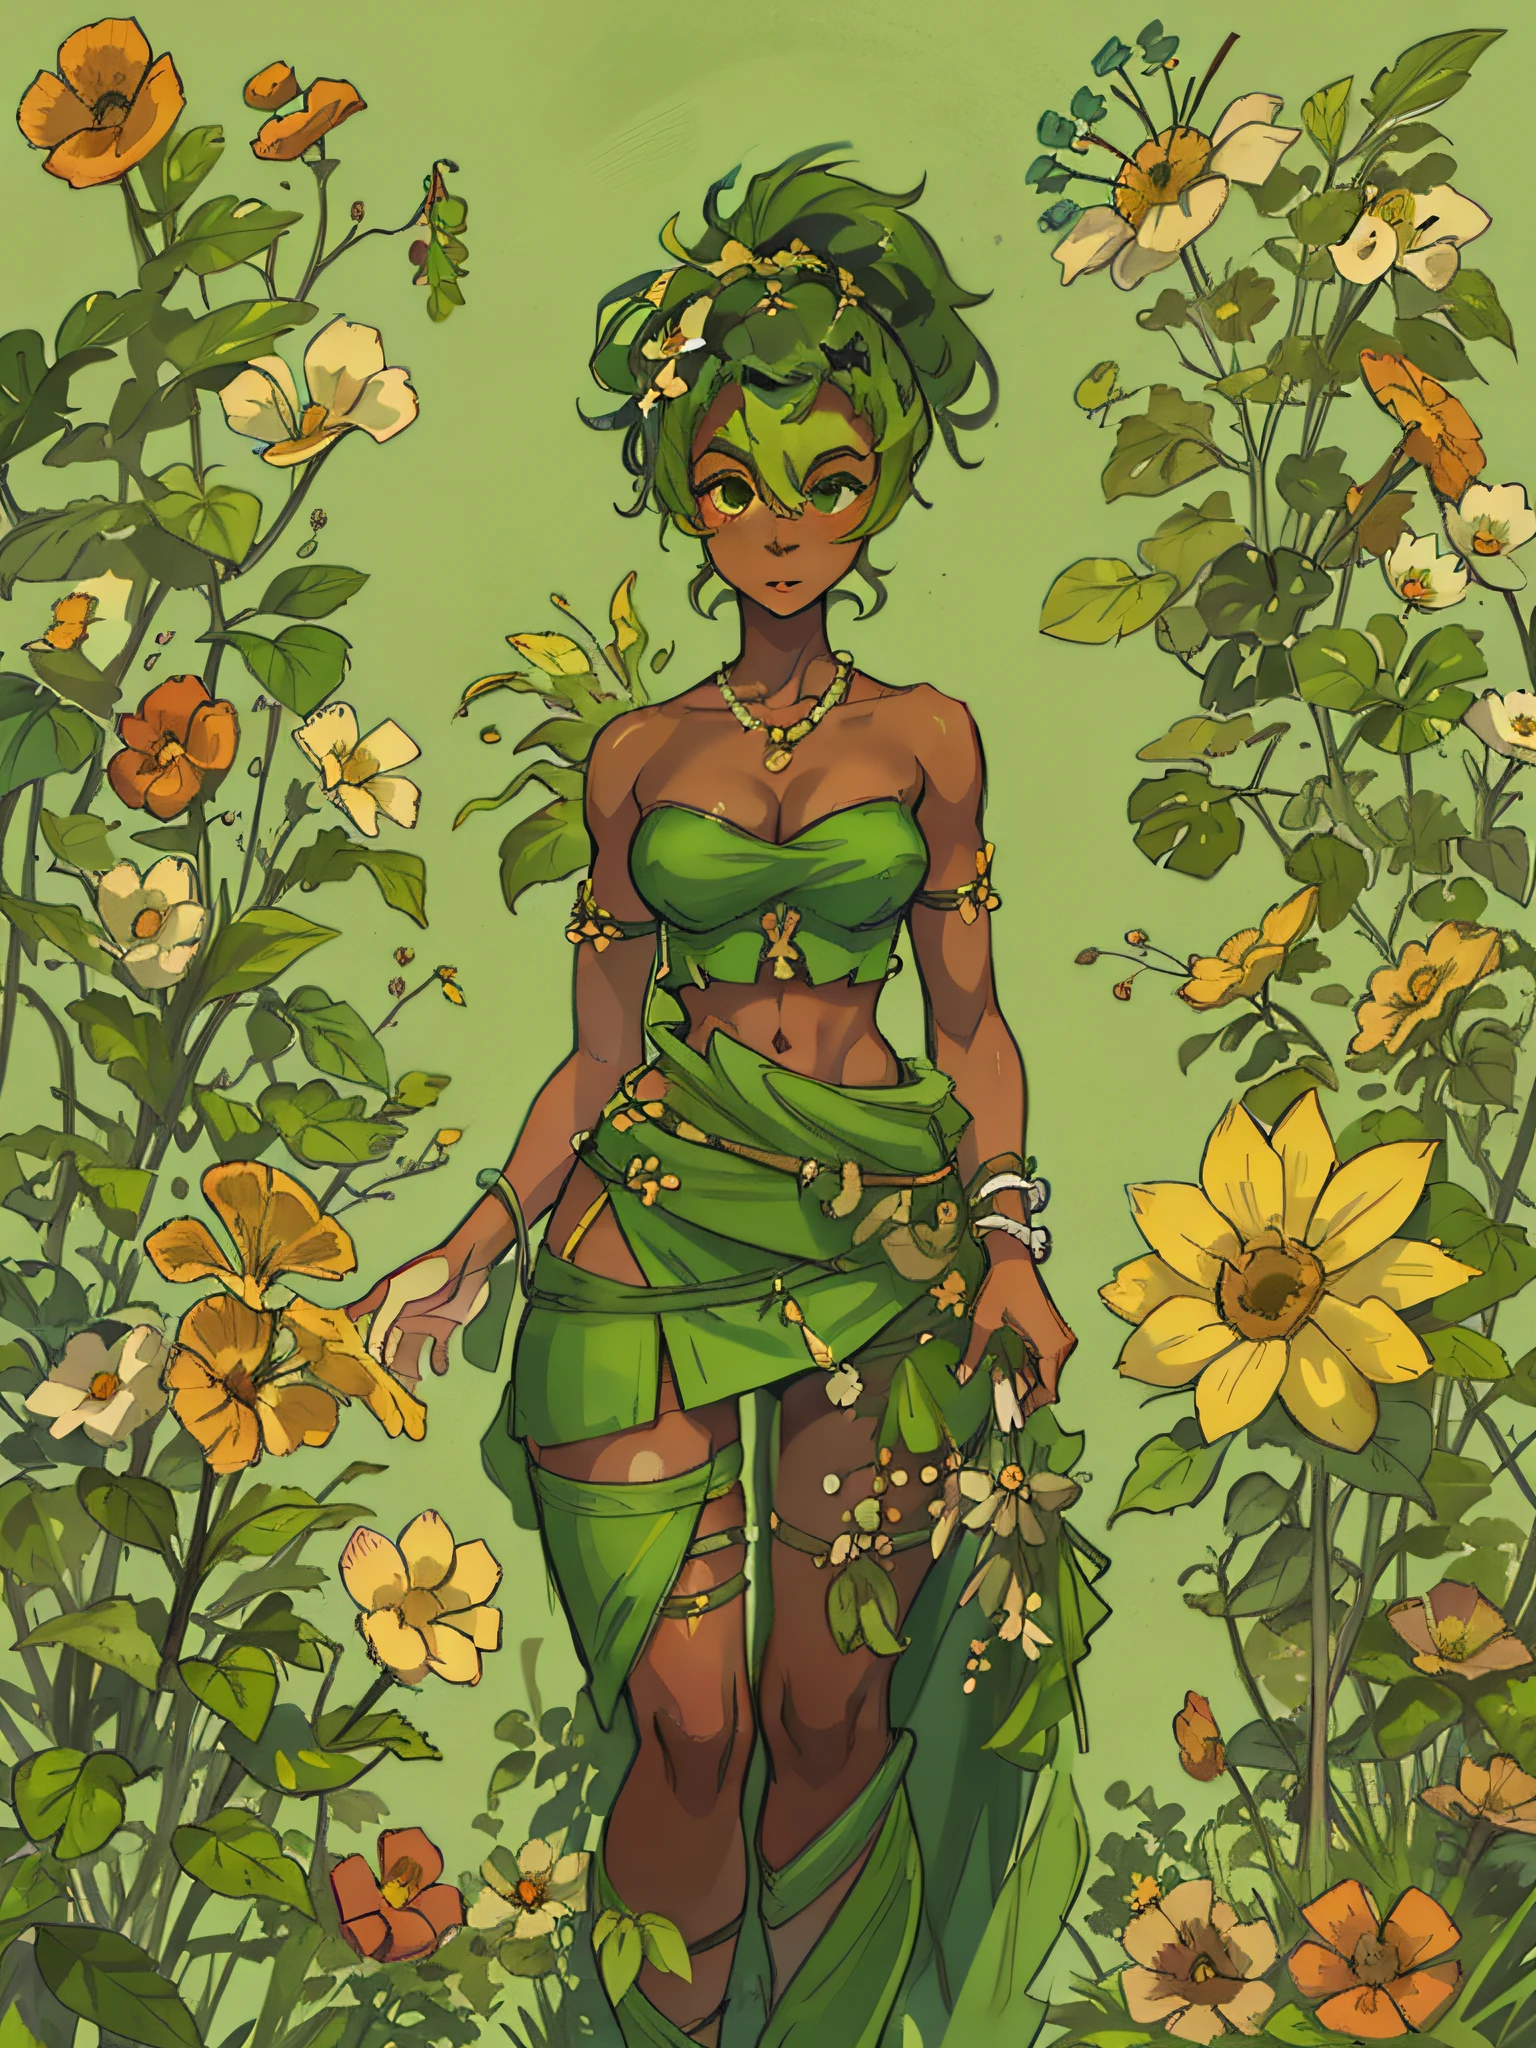 阿玛利亚, 一個年輕的黑人婦女, 綠髮, 散發出力量和韌性的光環. 裝飾著植物和花卉編織的衣服, 她的服裝頌揚自然之美，同時展示她與地球的聯繫. 綠色的裙子, 赤裸上身